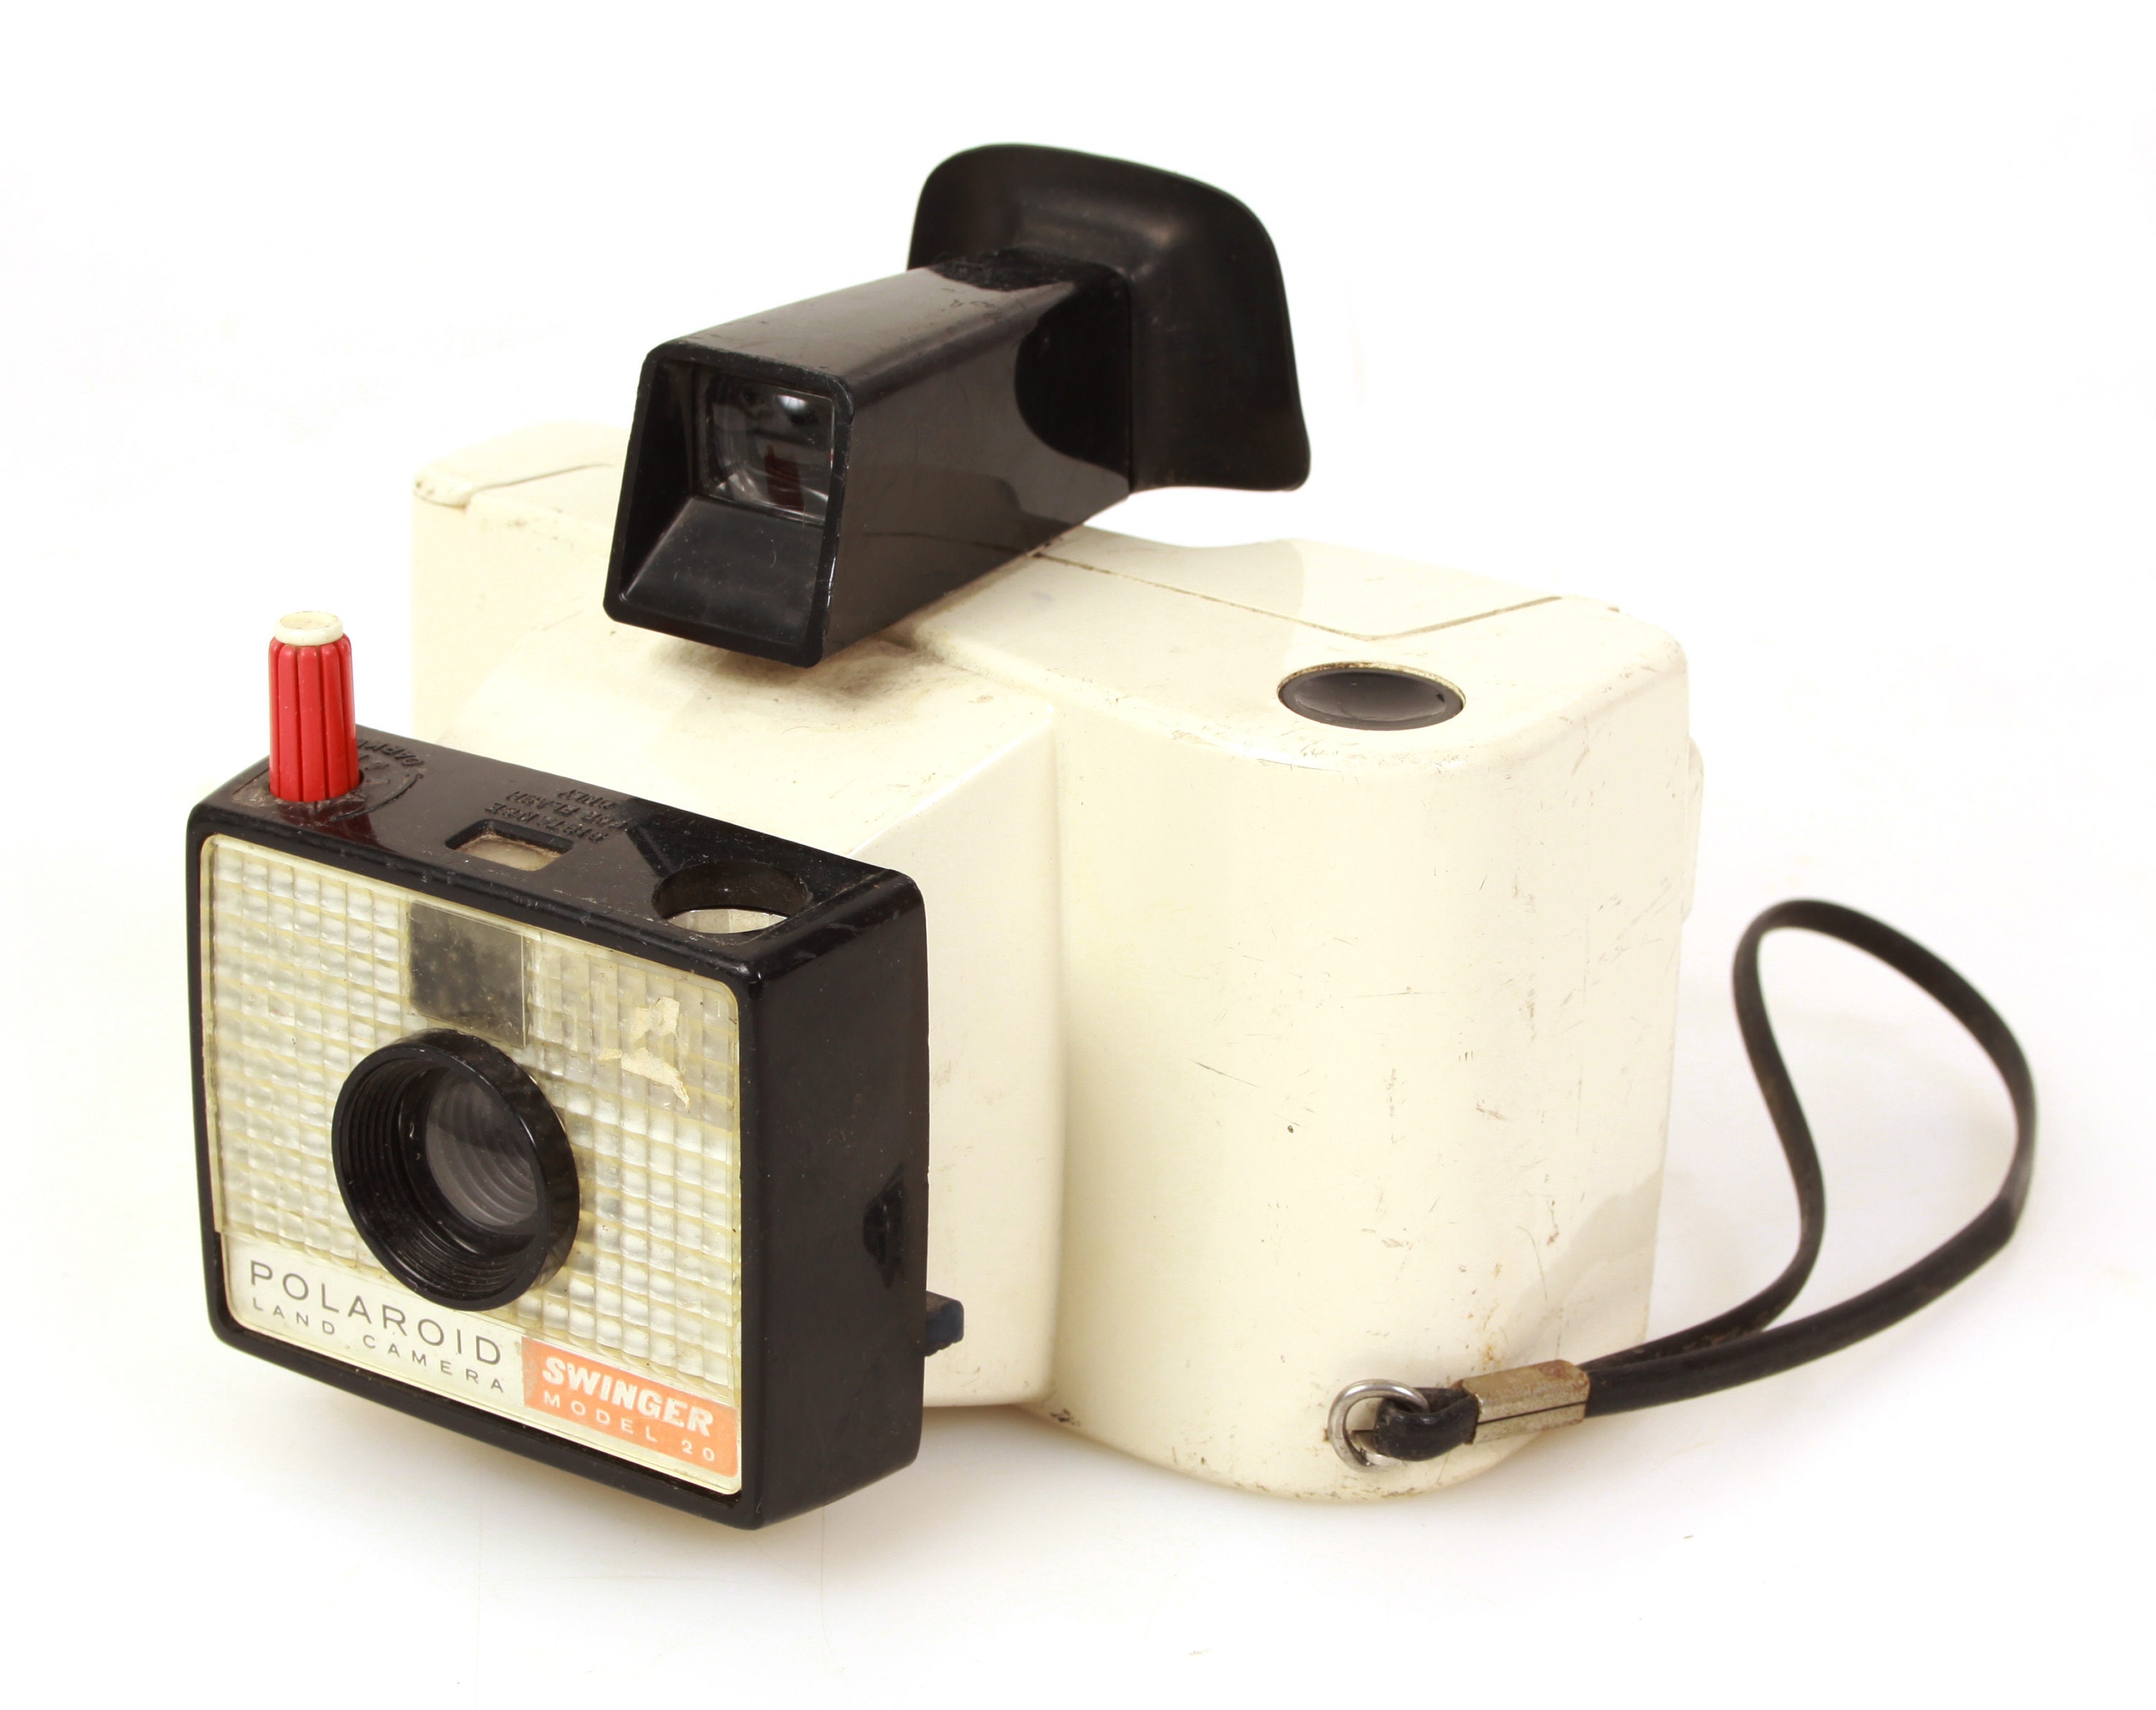 polaroid land camera swinger model 20